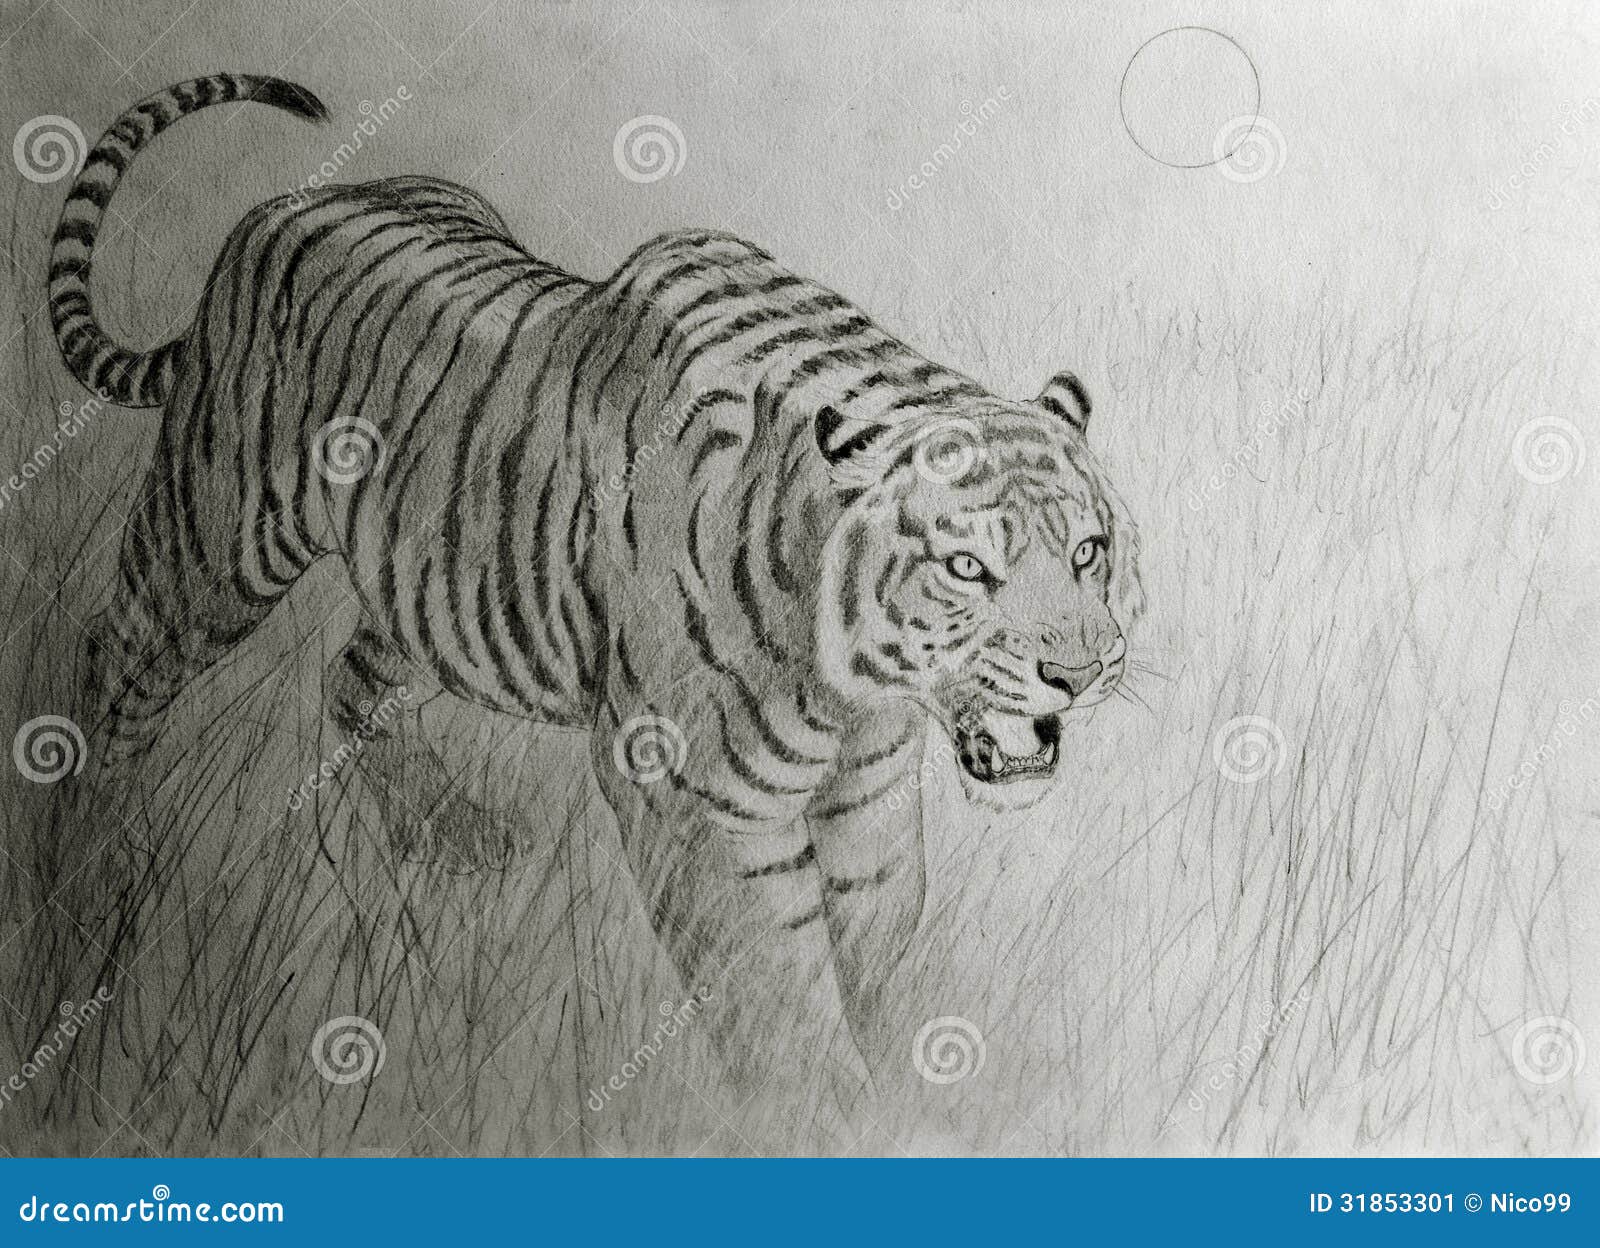 Tigre De Bengala En La Puesta Del Sol Stock de ilustración - Ilustración de  animal, pintura: 31853301